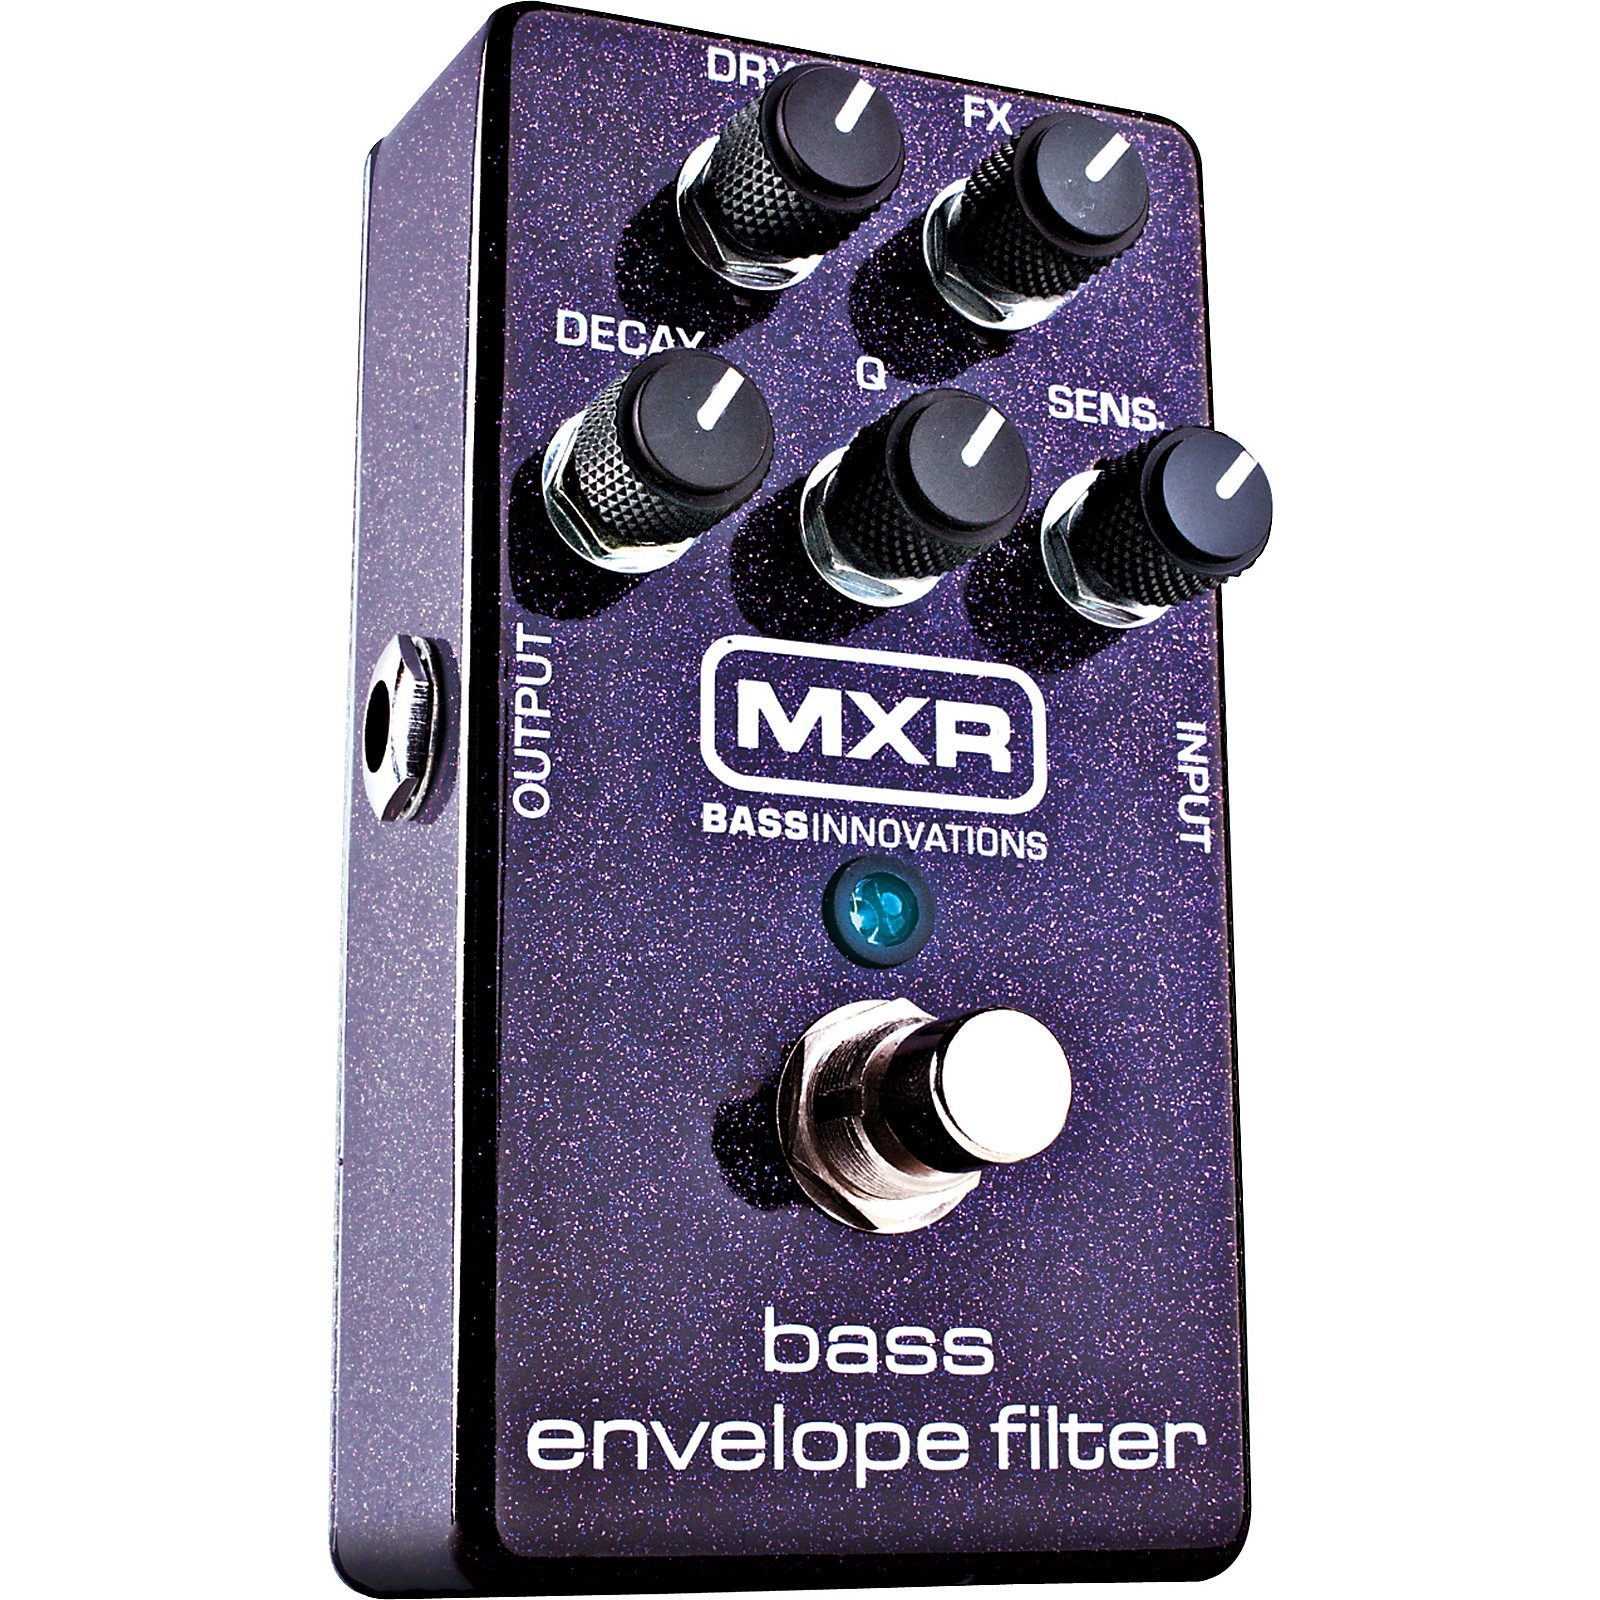 MXR MXR M82 Bass Envelope Filter Effects Pedal